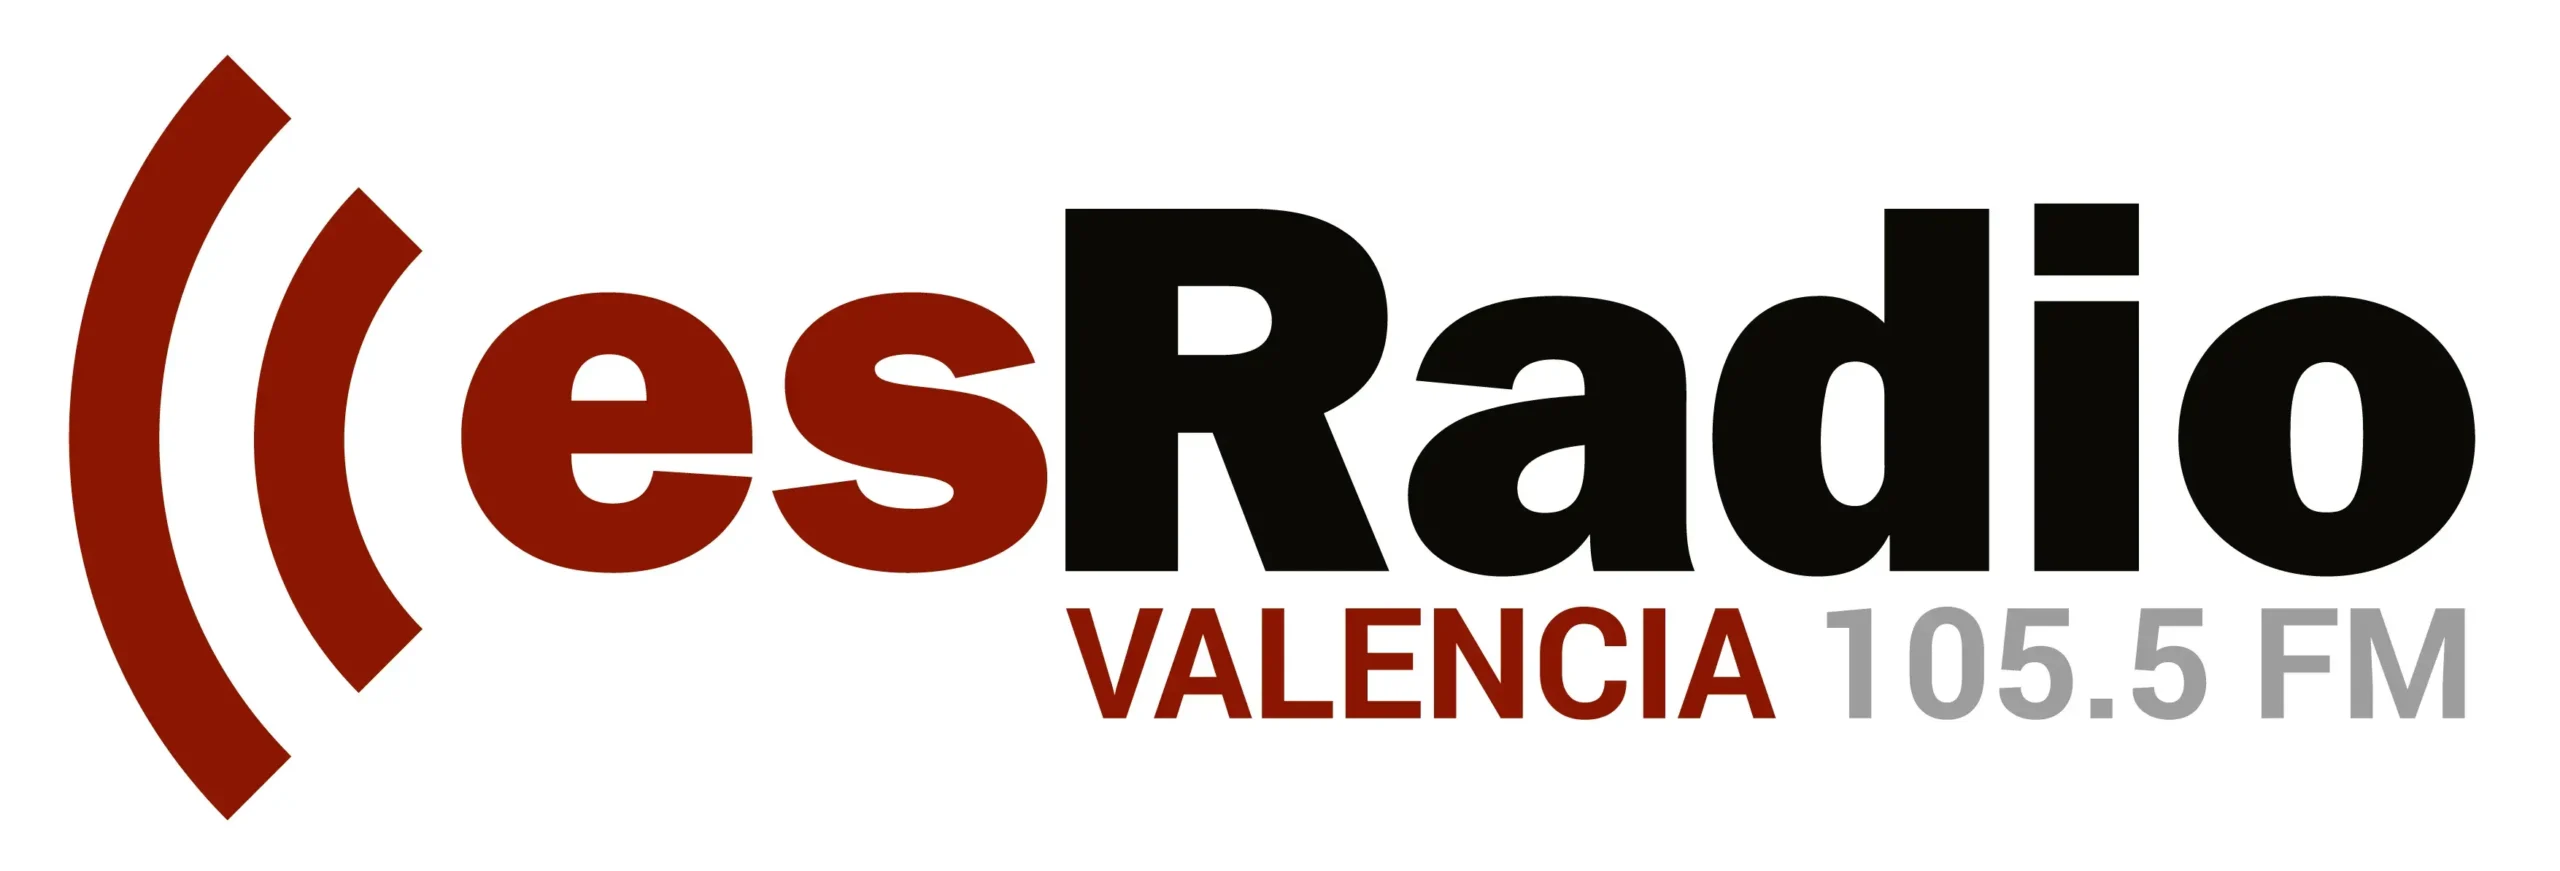 esRadio Valencia